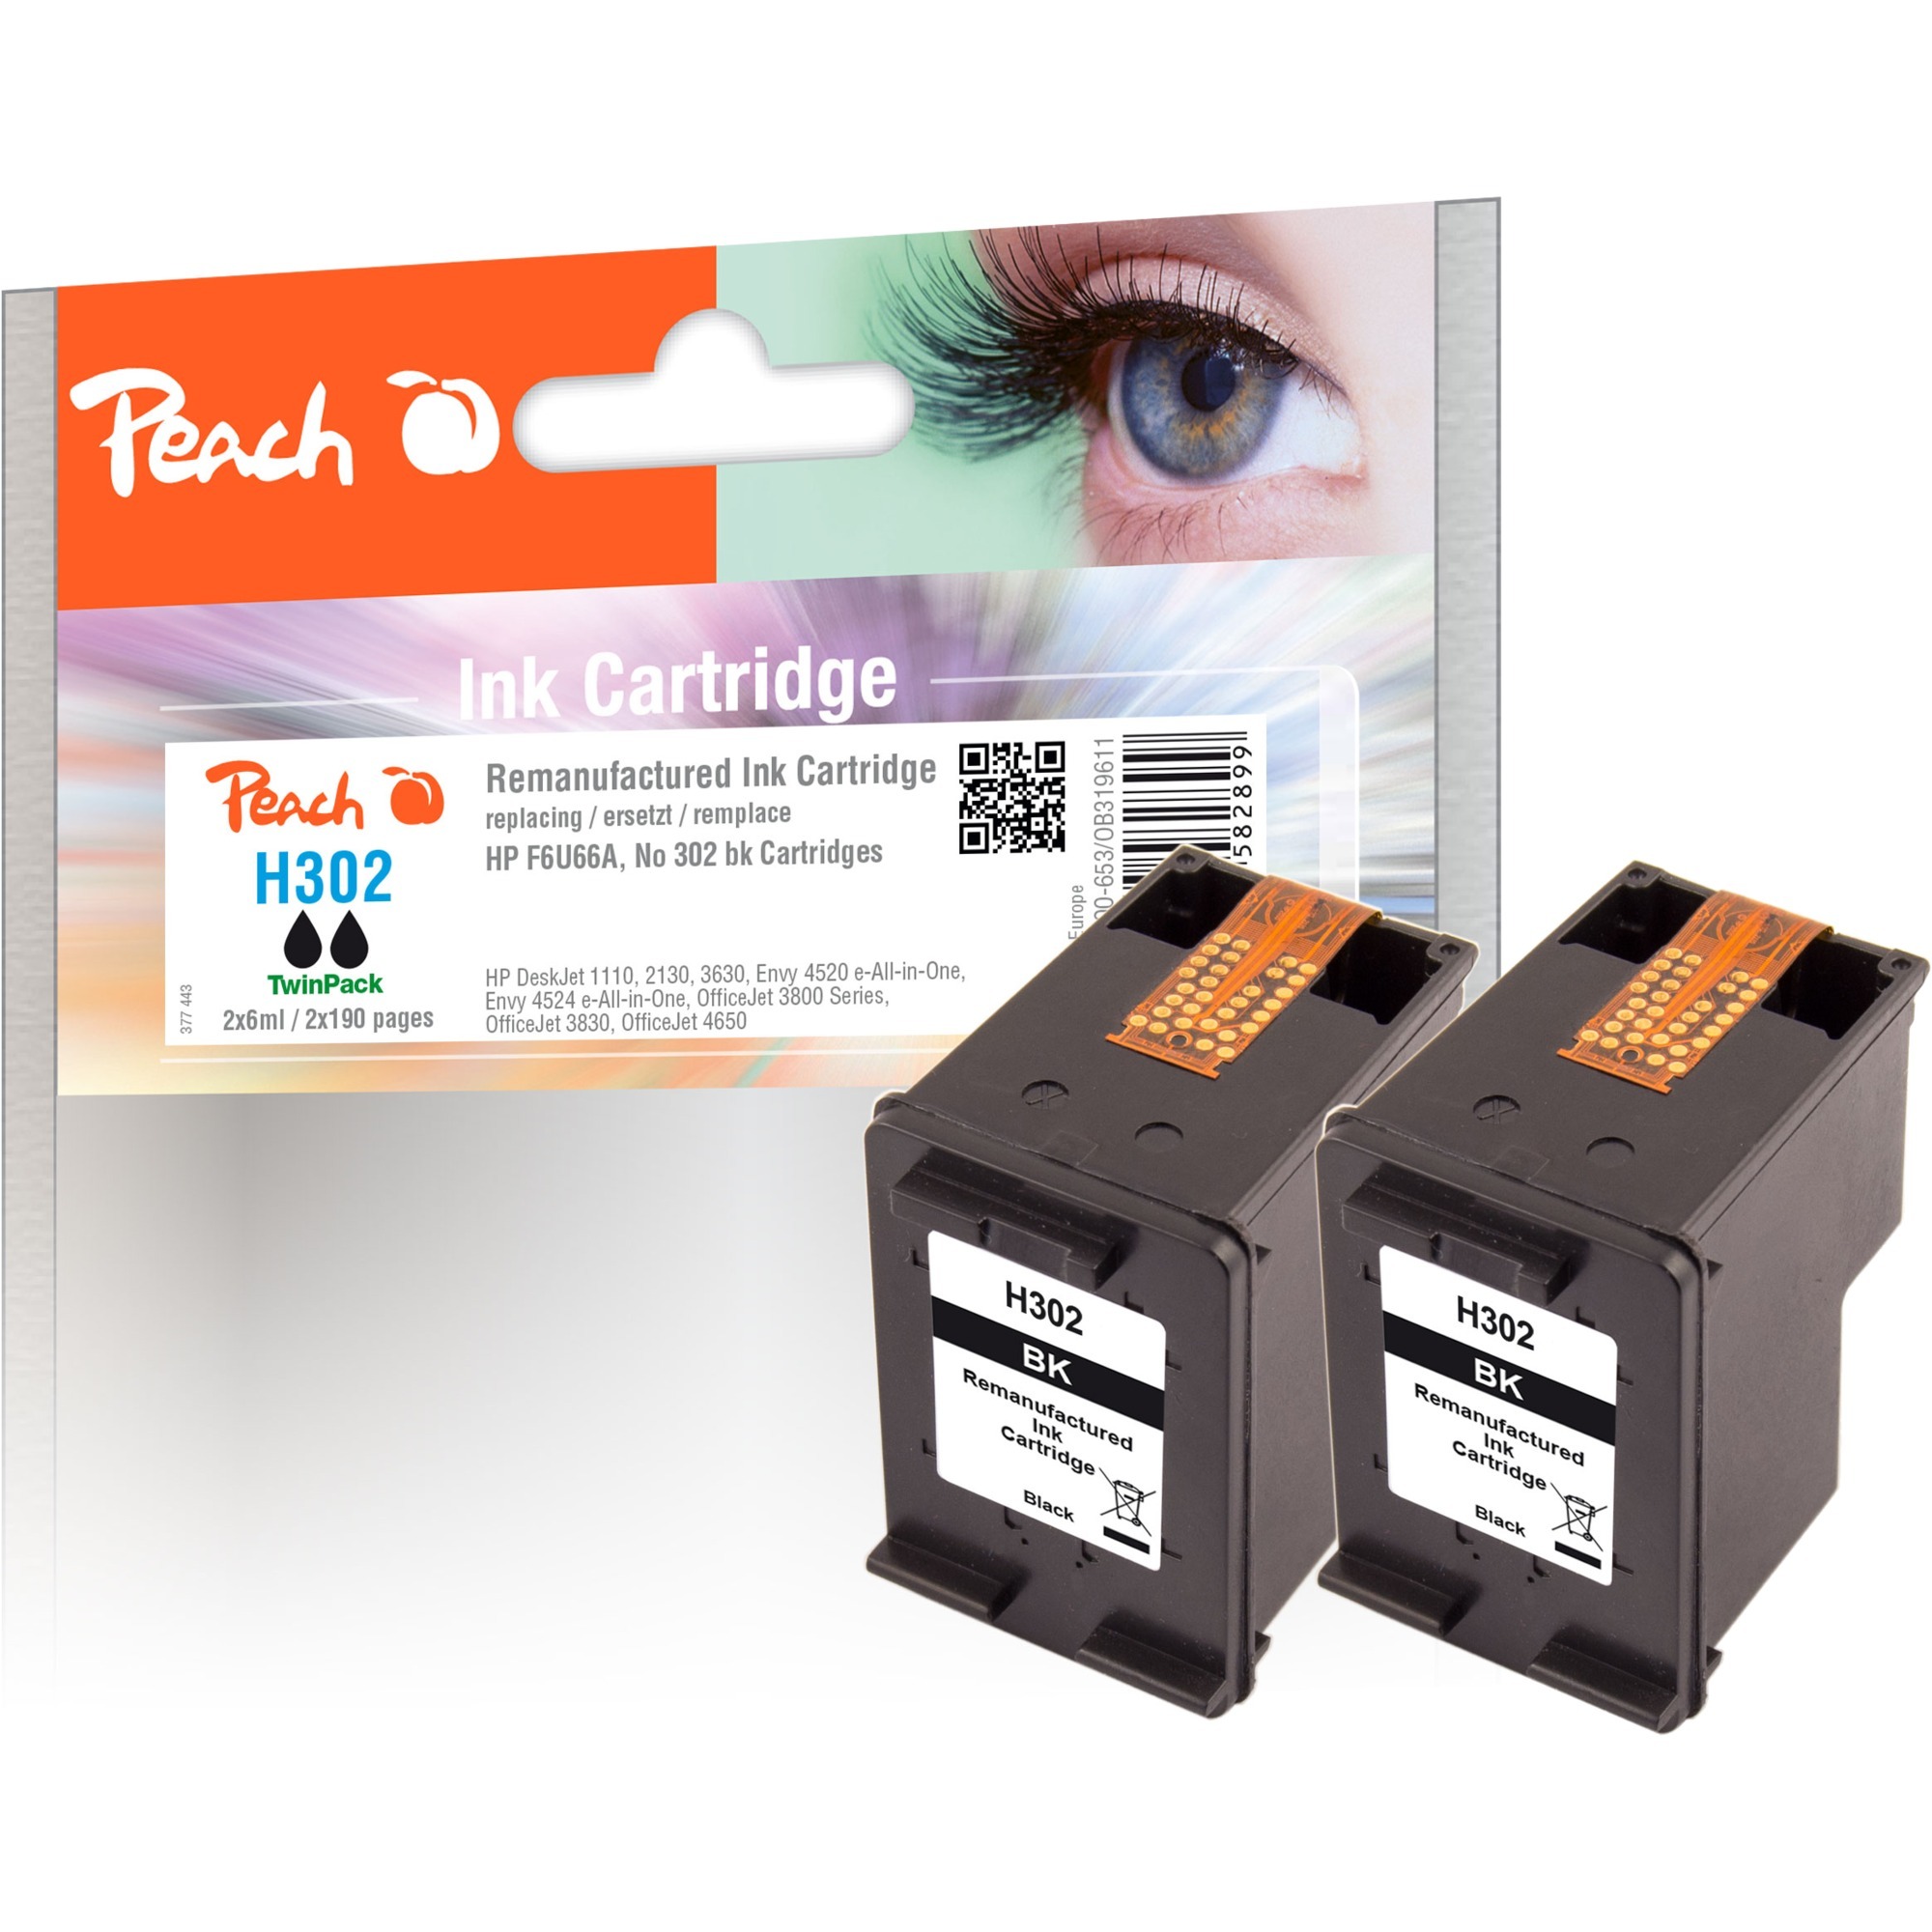 Image of Alternate - Tinte Doppelpack schwarz PI300-653 online einkaufen bei Alternate